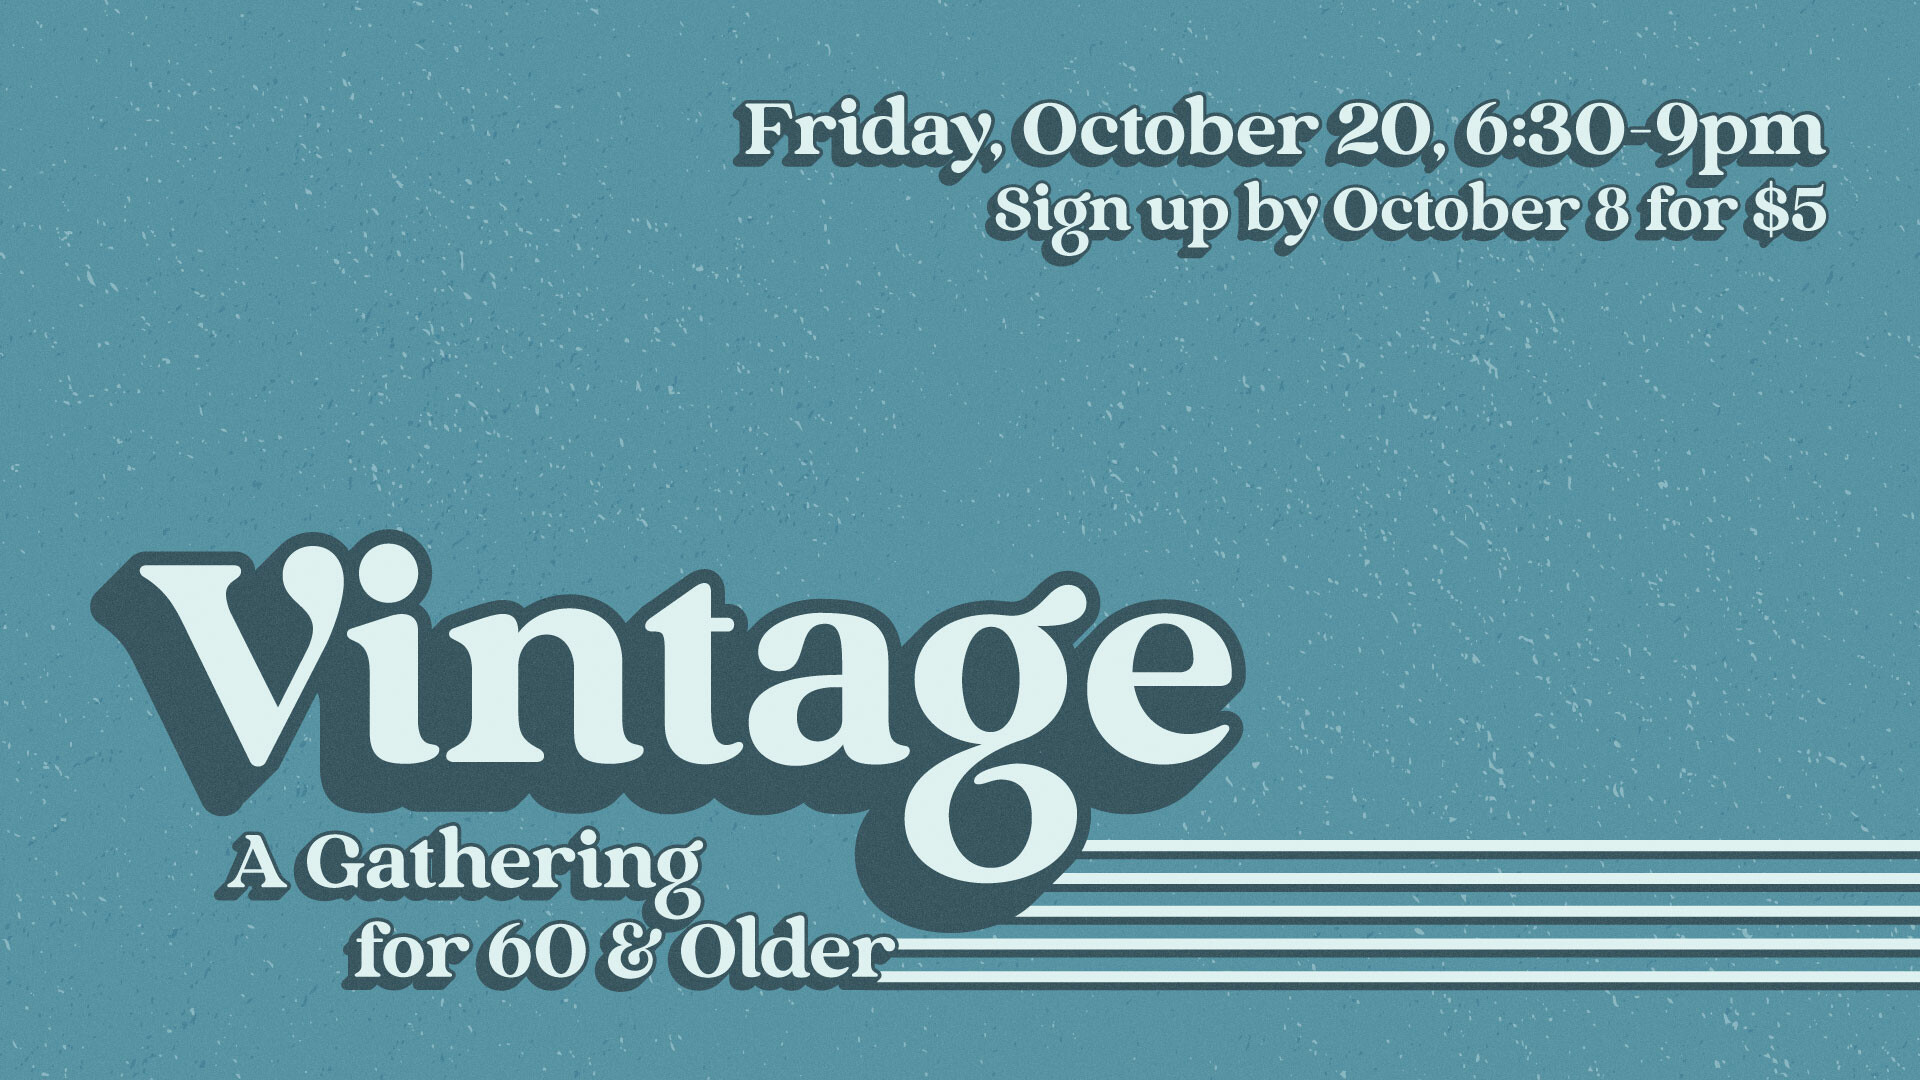 Vintage: A Gathering for 60 & Older